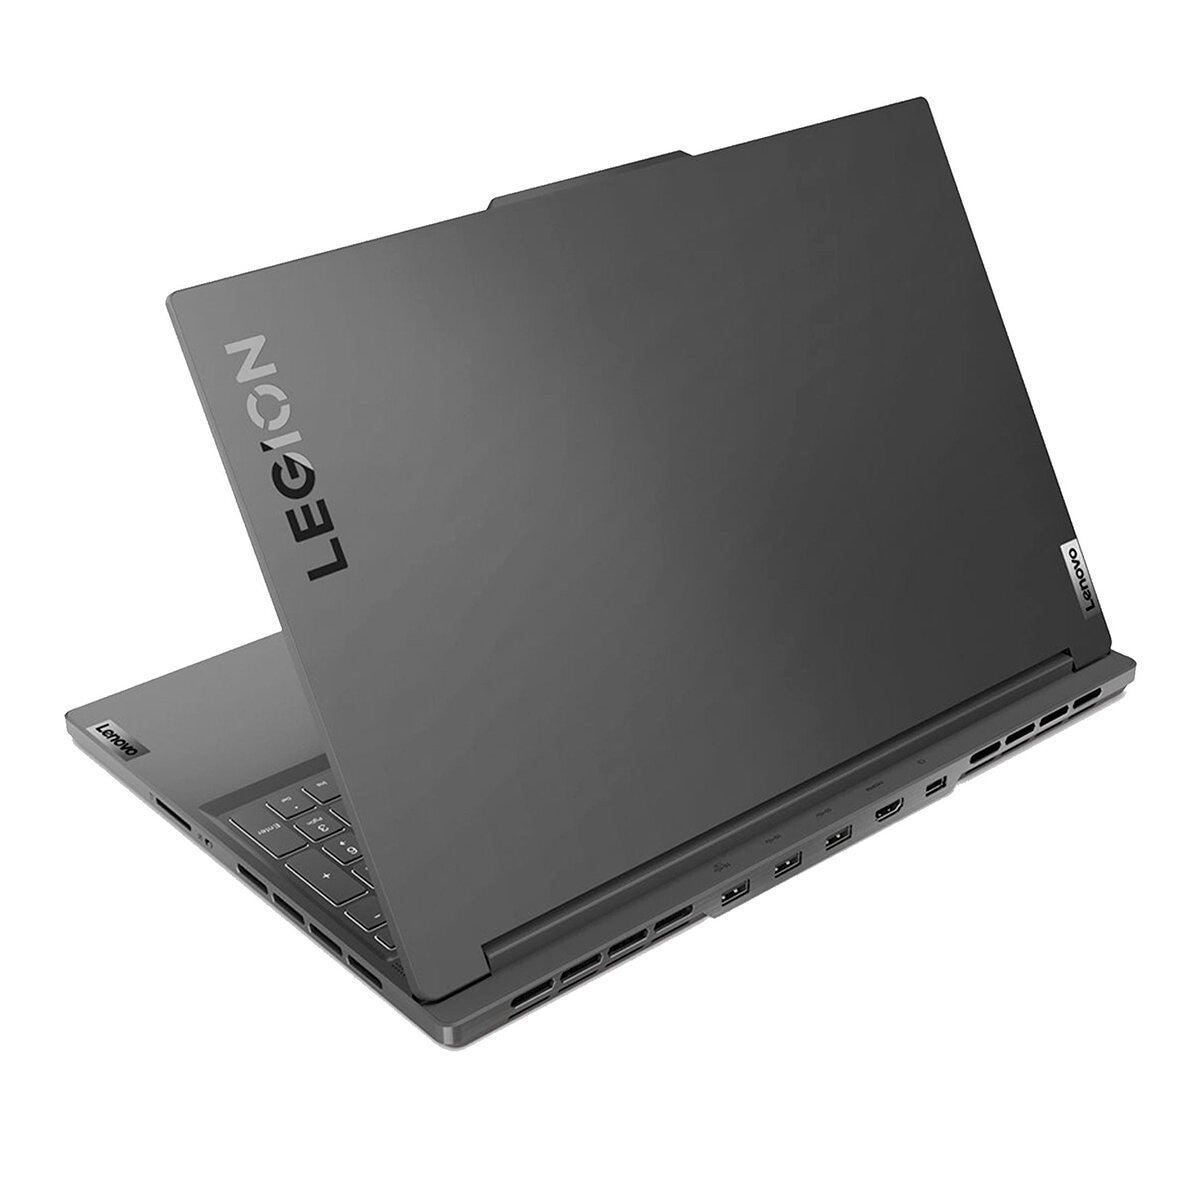 Lenovo Legion Slim 5 Laptop Gaming 16" Quad HD Intel Core i7 16GB 512GB SSD